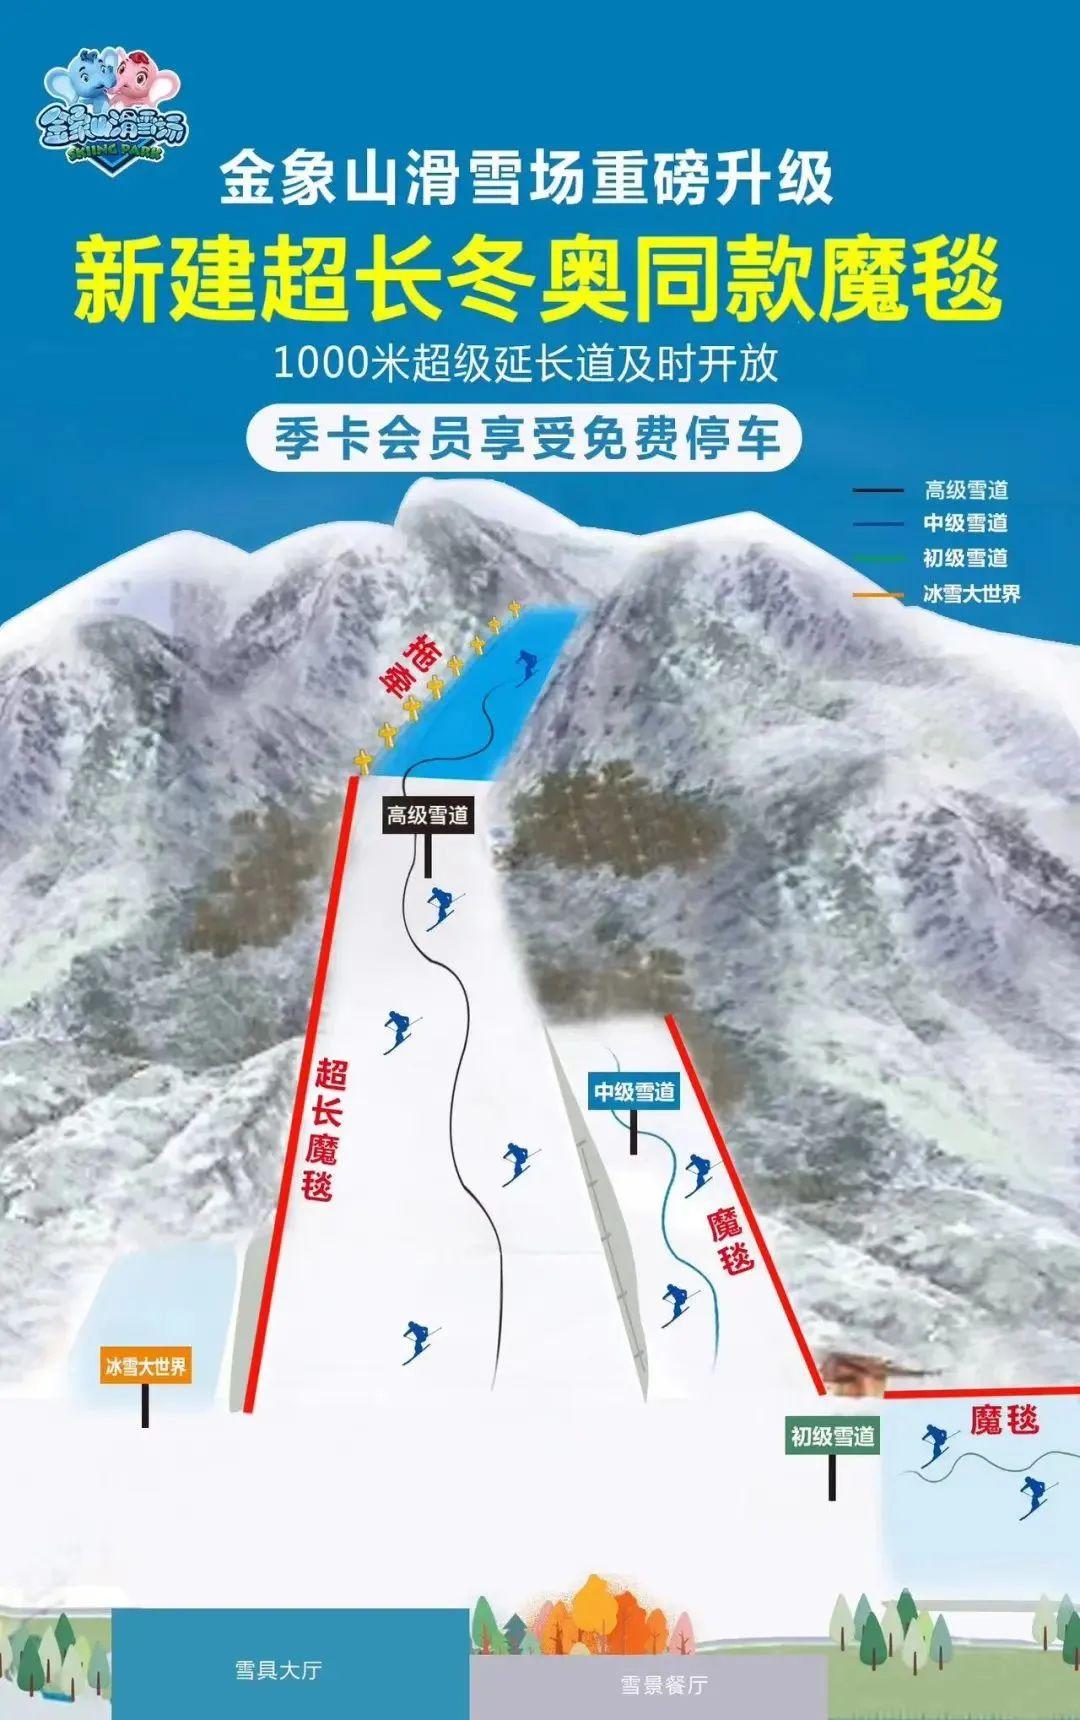 共享冬奥盛会，陕西照金滑雪场掀起冰雪热_运动_青少年_游客